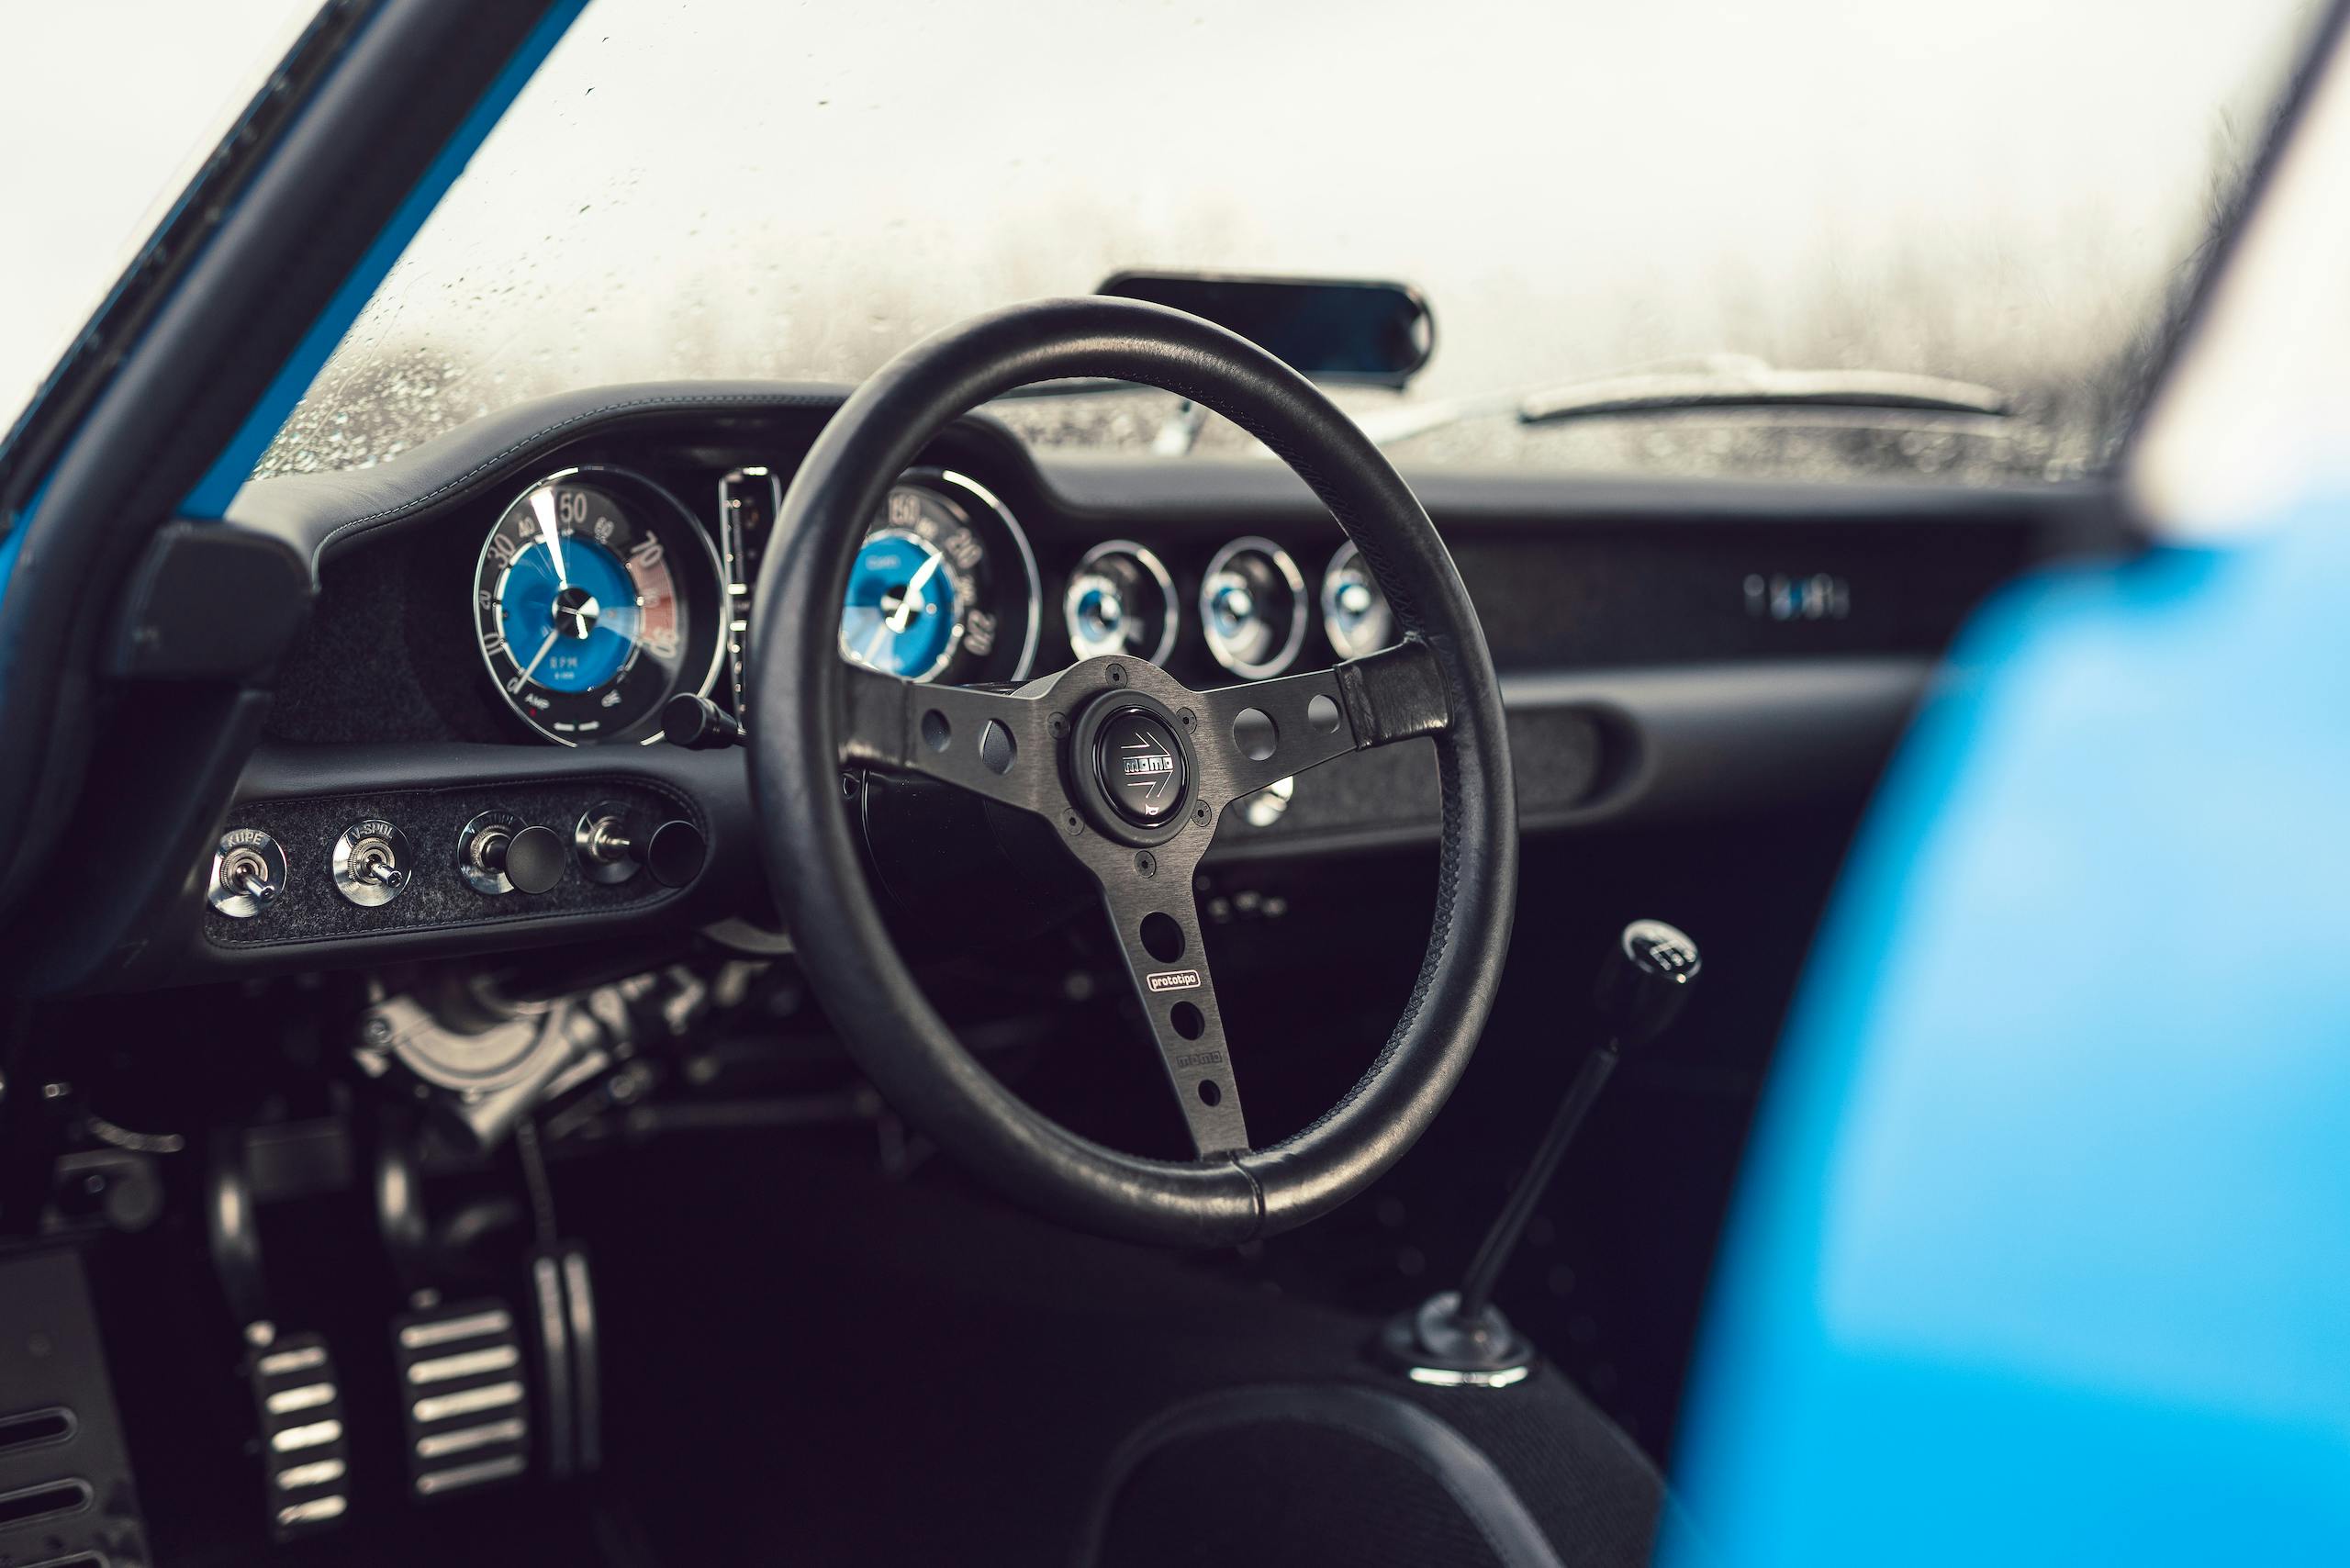 CYAN RACING P1800 steering wheel detail